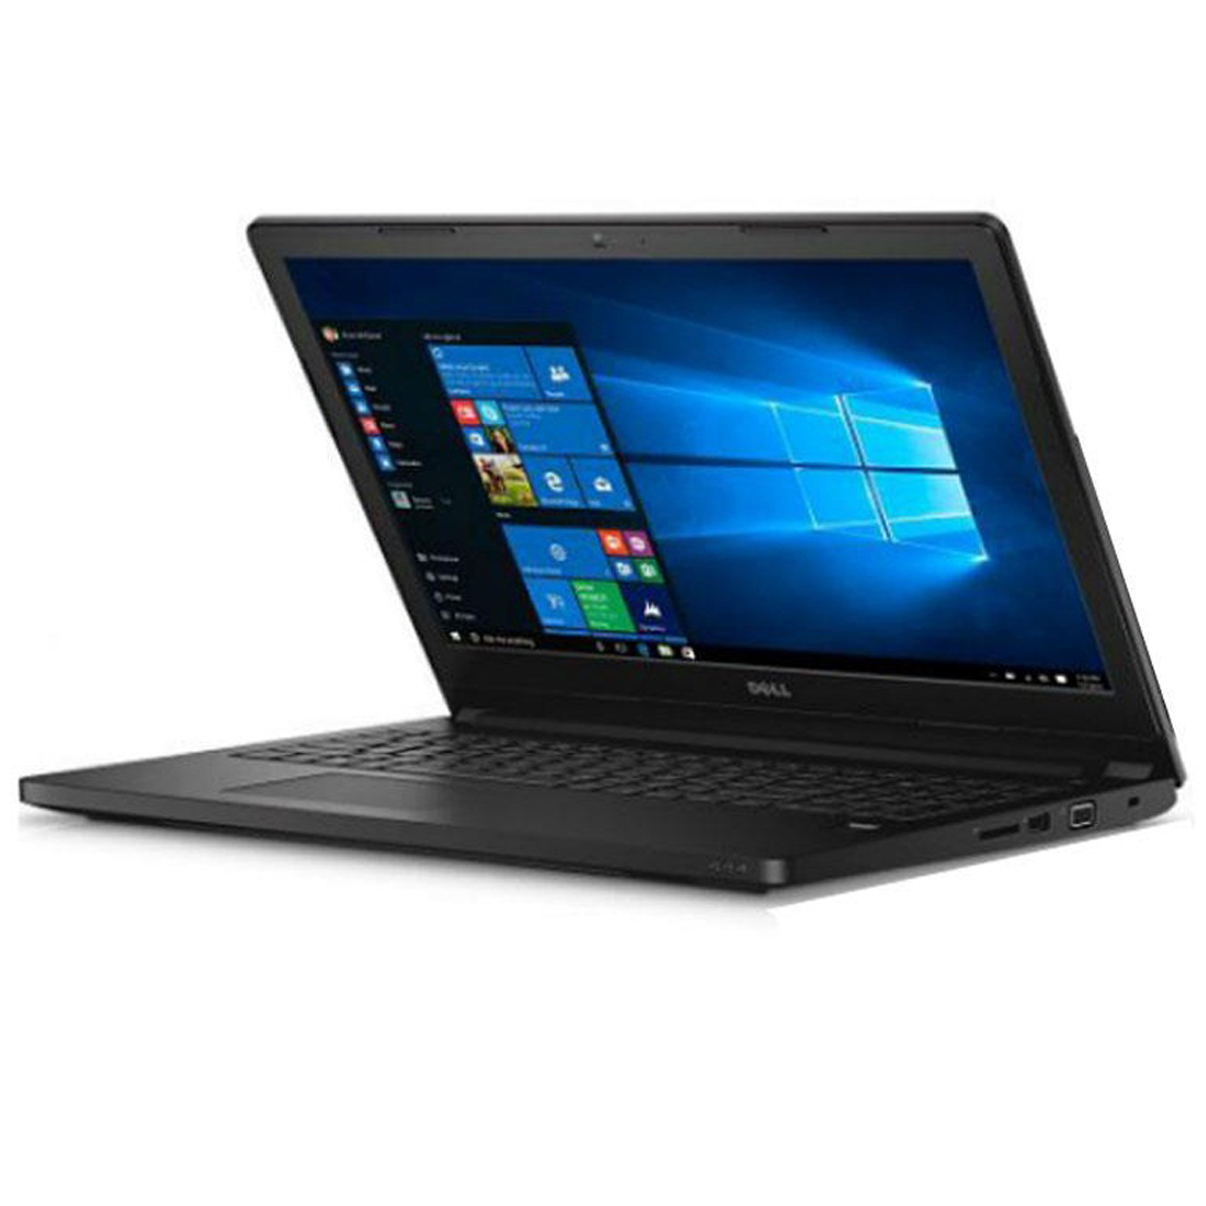 Laptop Dell Latitude L3570A P50F001-TI54500 - Intel Core i5 6200U 2.3, RAM 4GB, HDD 500GB, VGA Intel HD520, 15,6inch